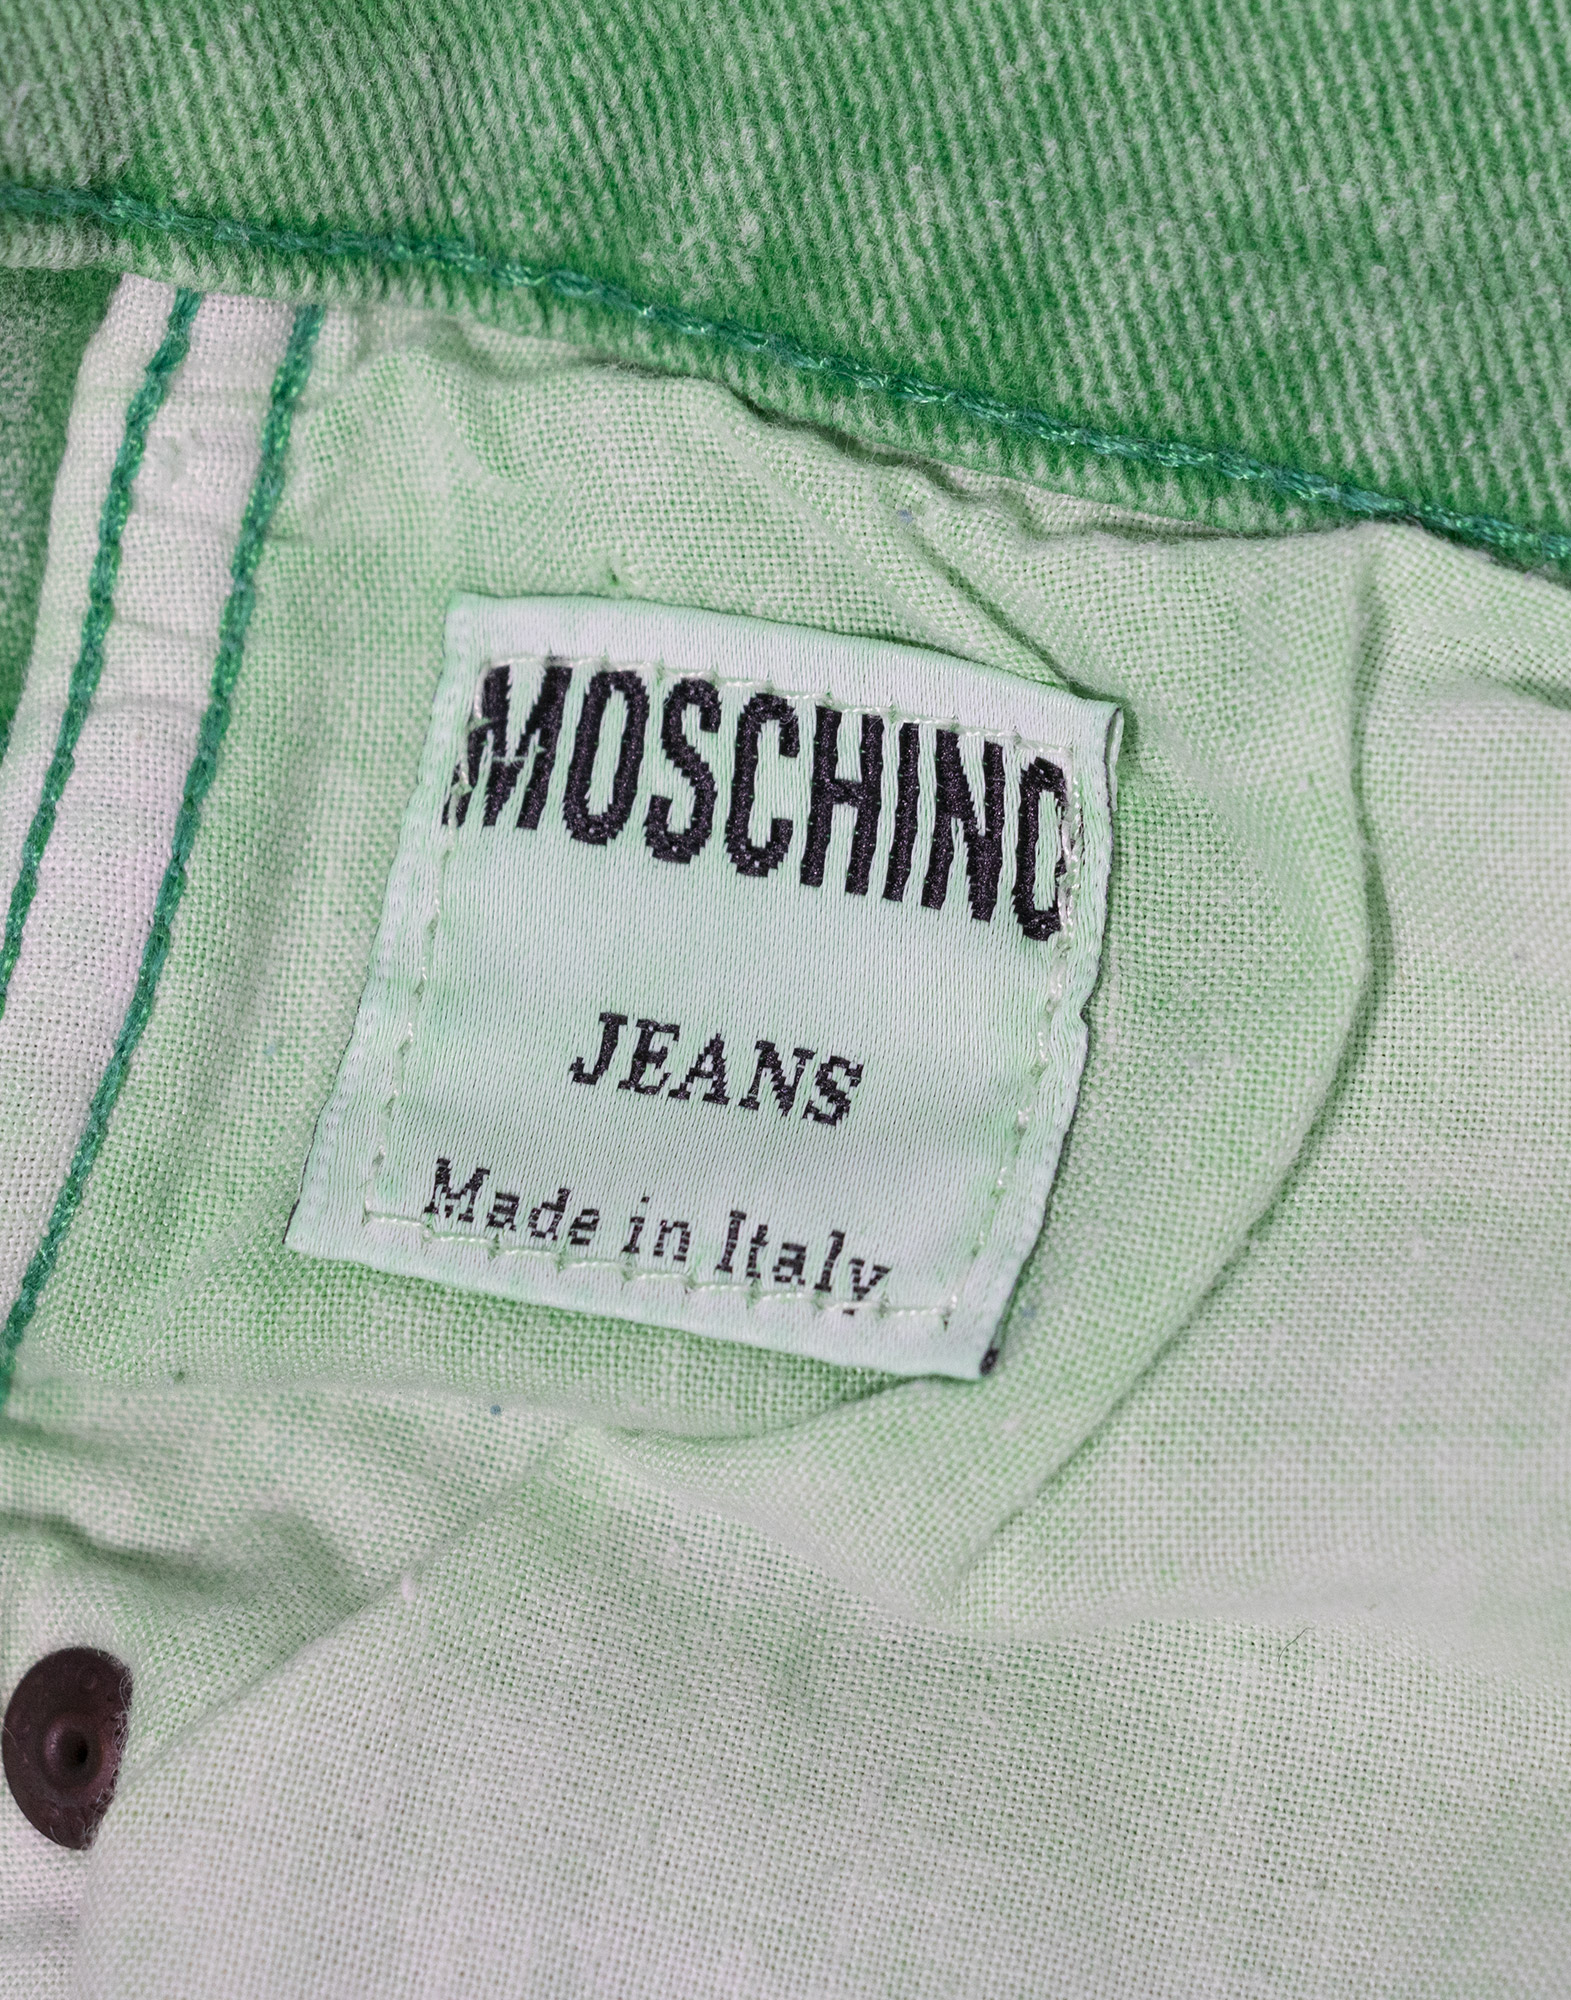 Moschino Jeans - Pantaloni verdi in cotone anni '90